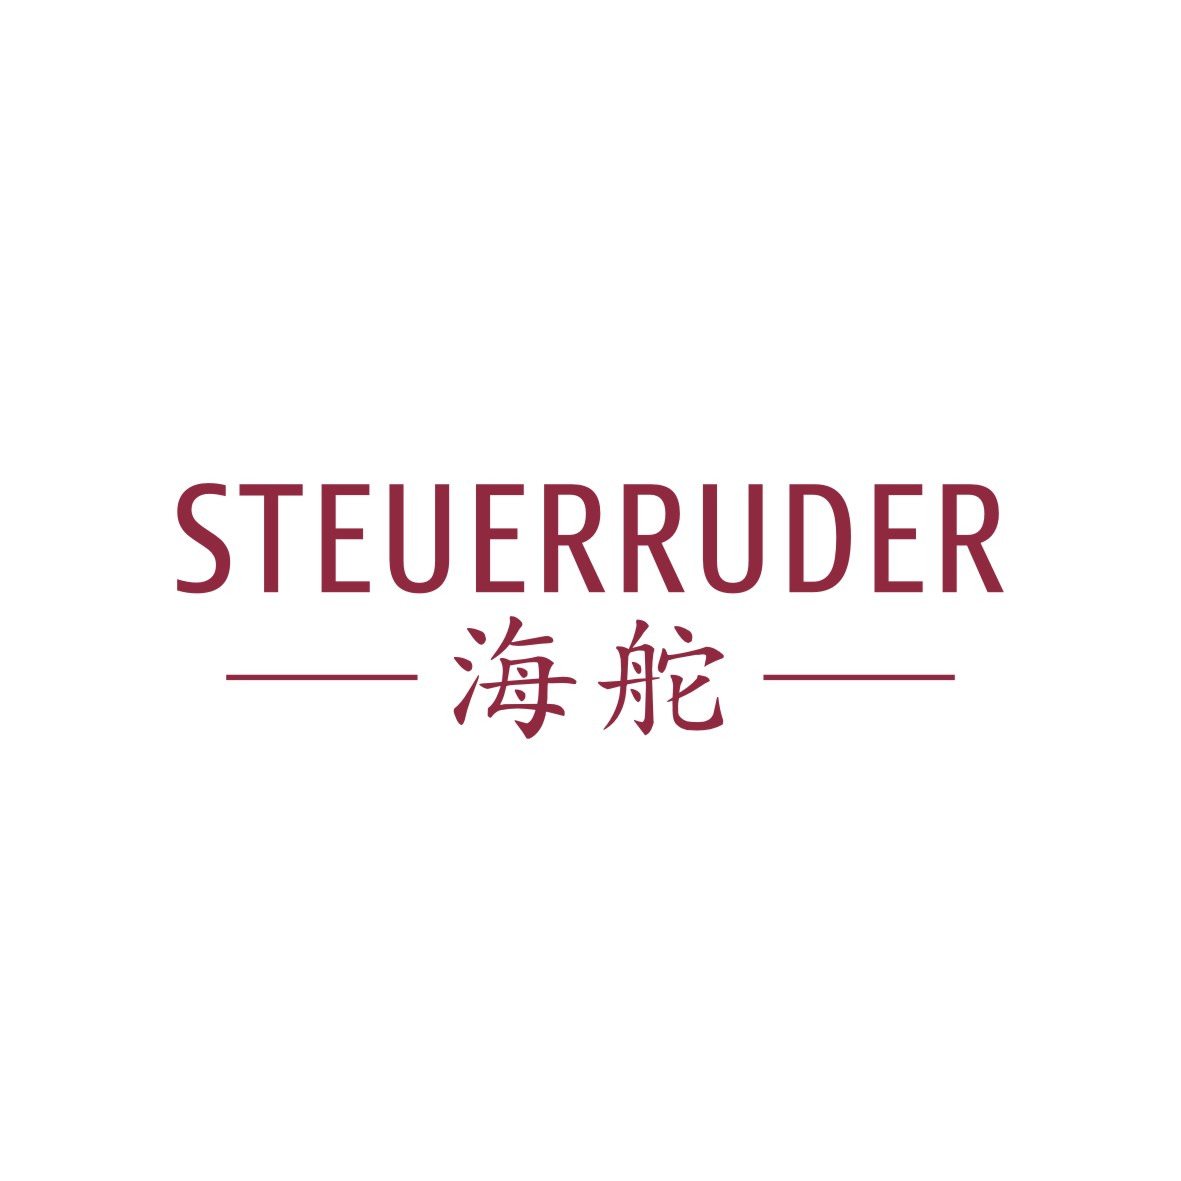 广州品翰文化发展有限公司商标海舵 STEUERRUDER（14类）多少钱？